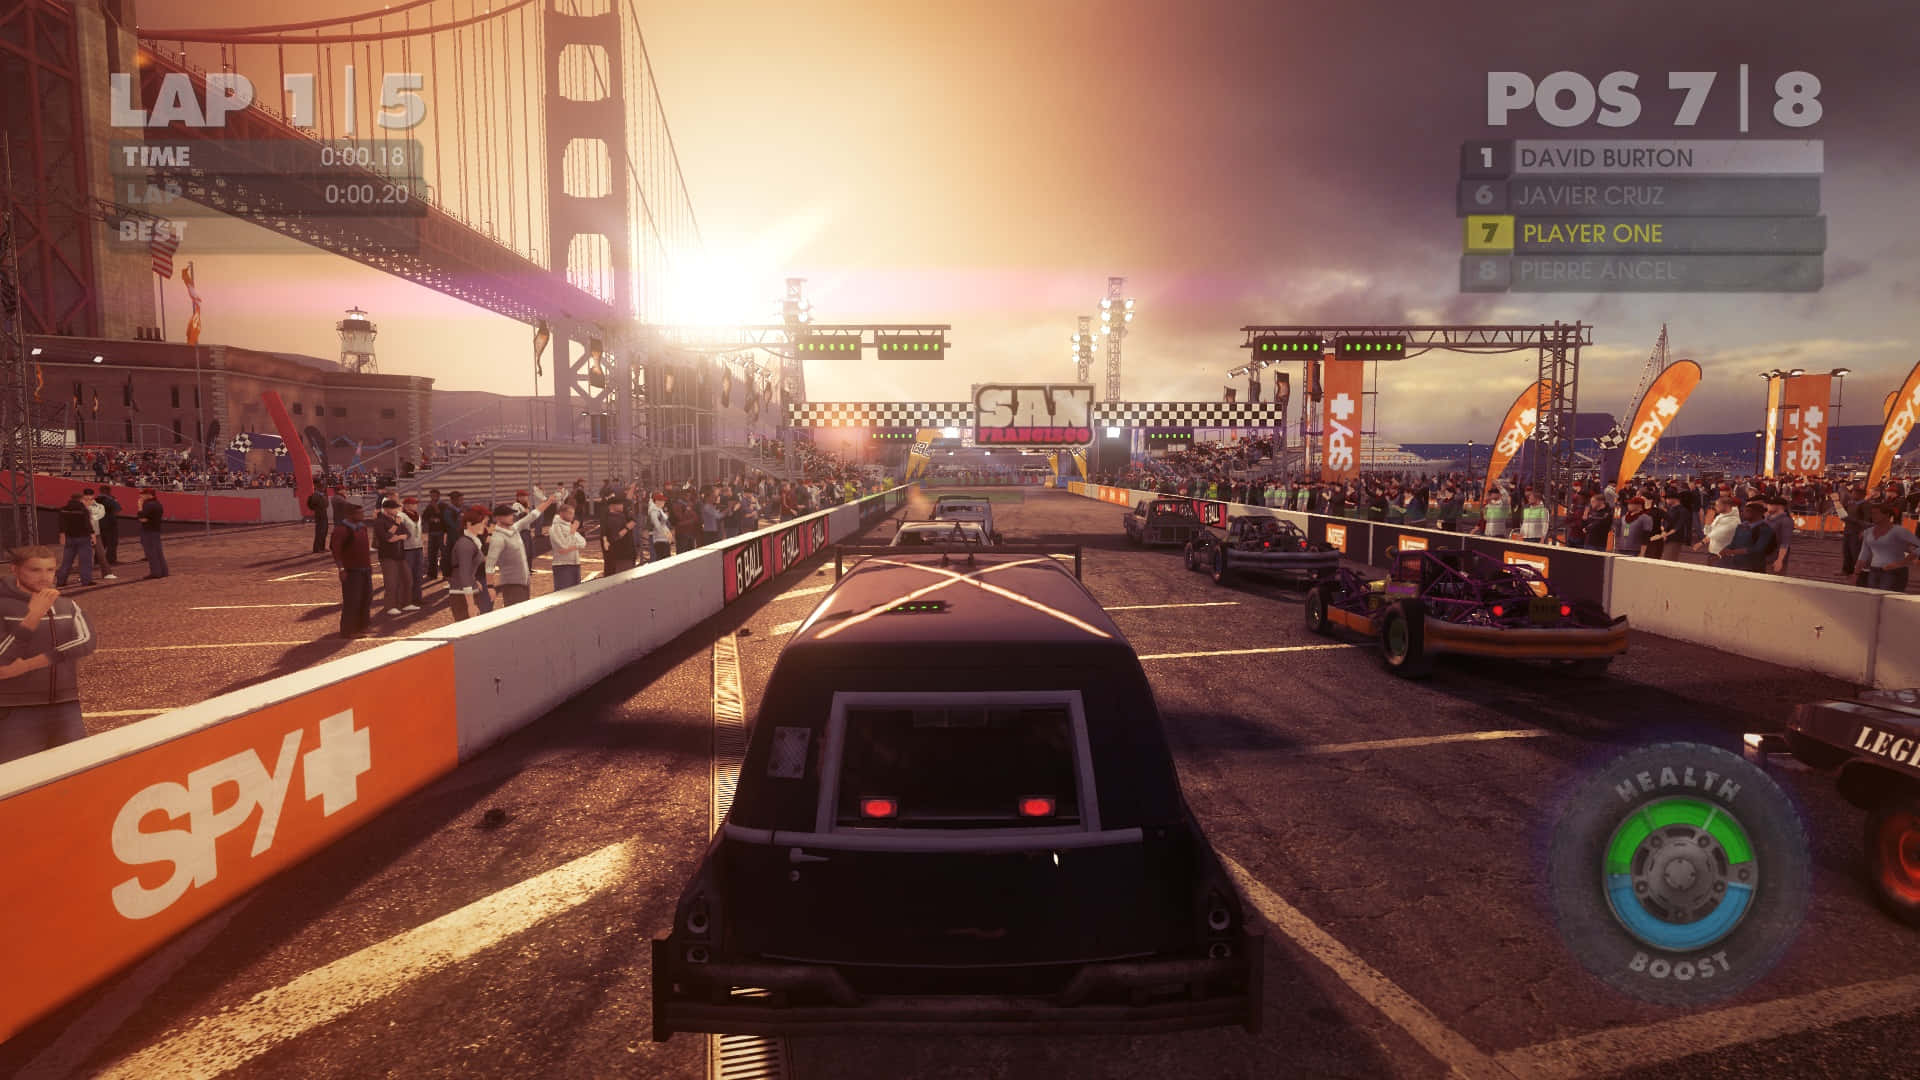 et screenshot af et racer spil med biler og mennesker